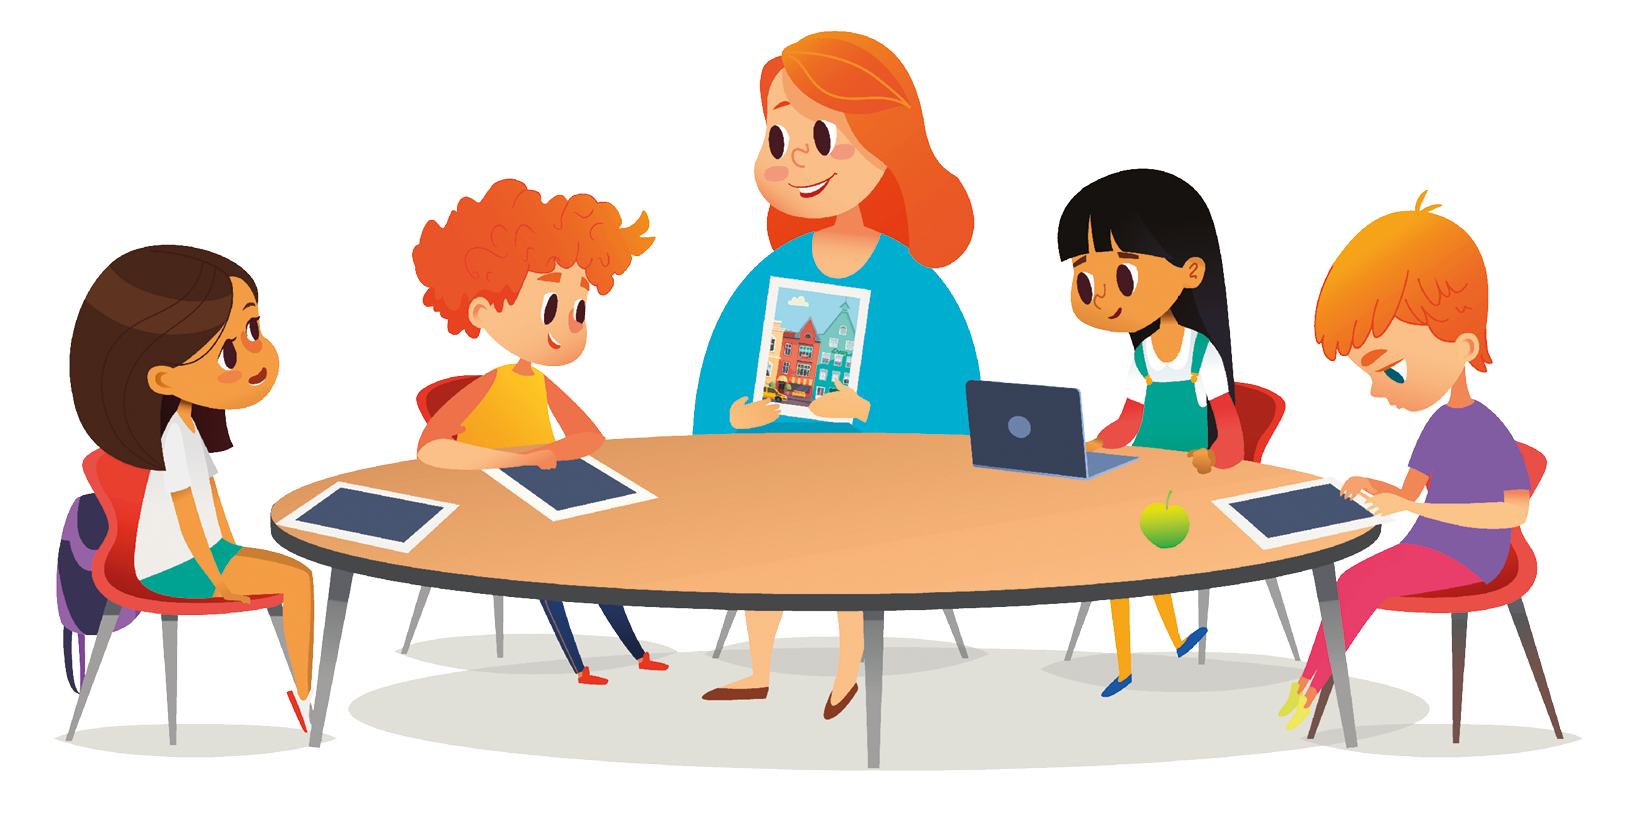 Ilustração. Uma mulher de cabelo ruivo, usando roupa azul e sentada a uma mesa redonda, segura uma fotografia e estende-a para frente; ao redor dela, há diversas crianças sentadas à mesa e com tablets e notebooks.